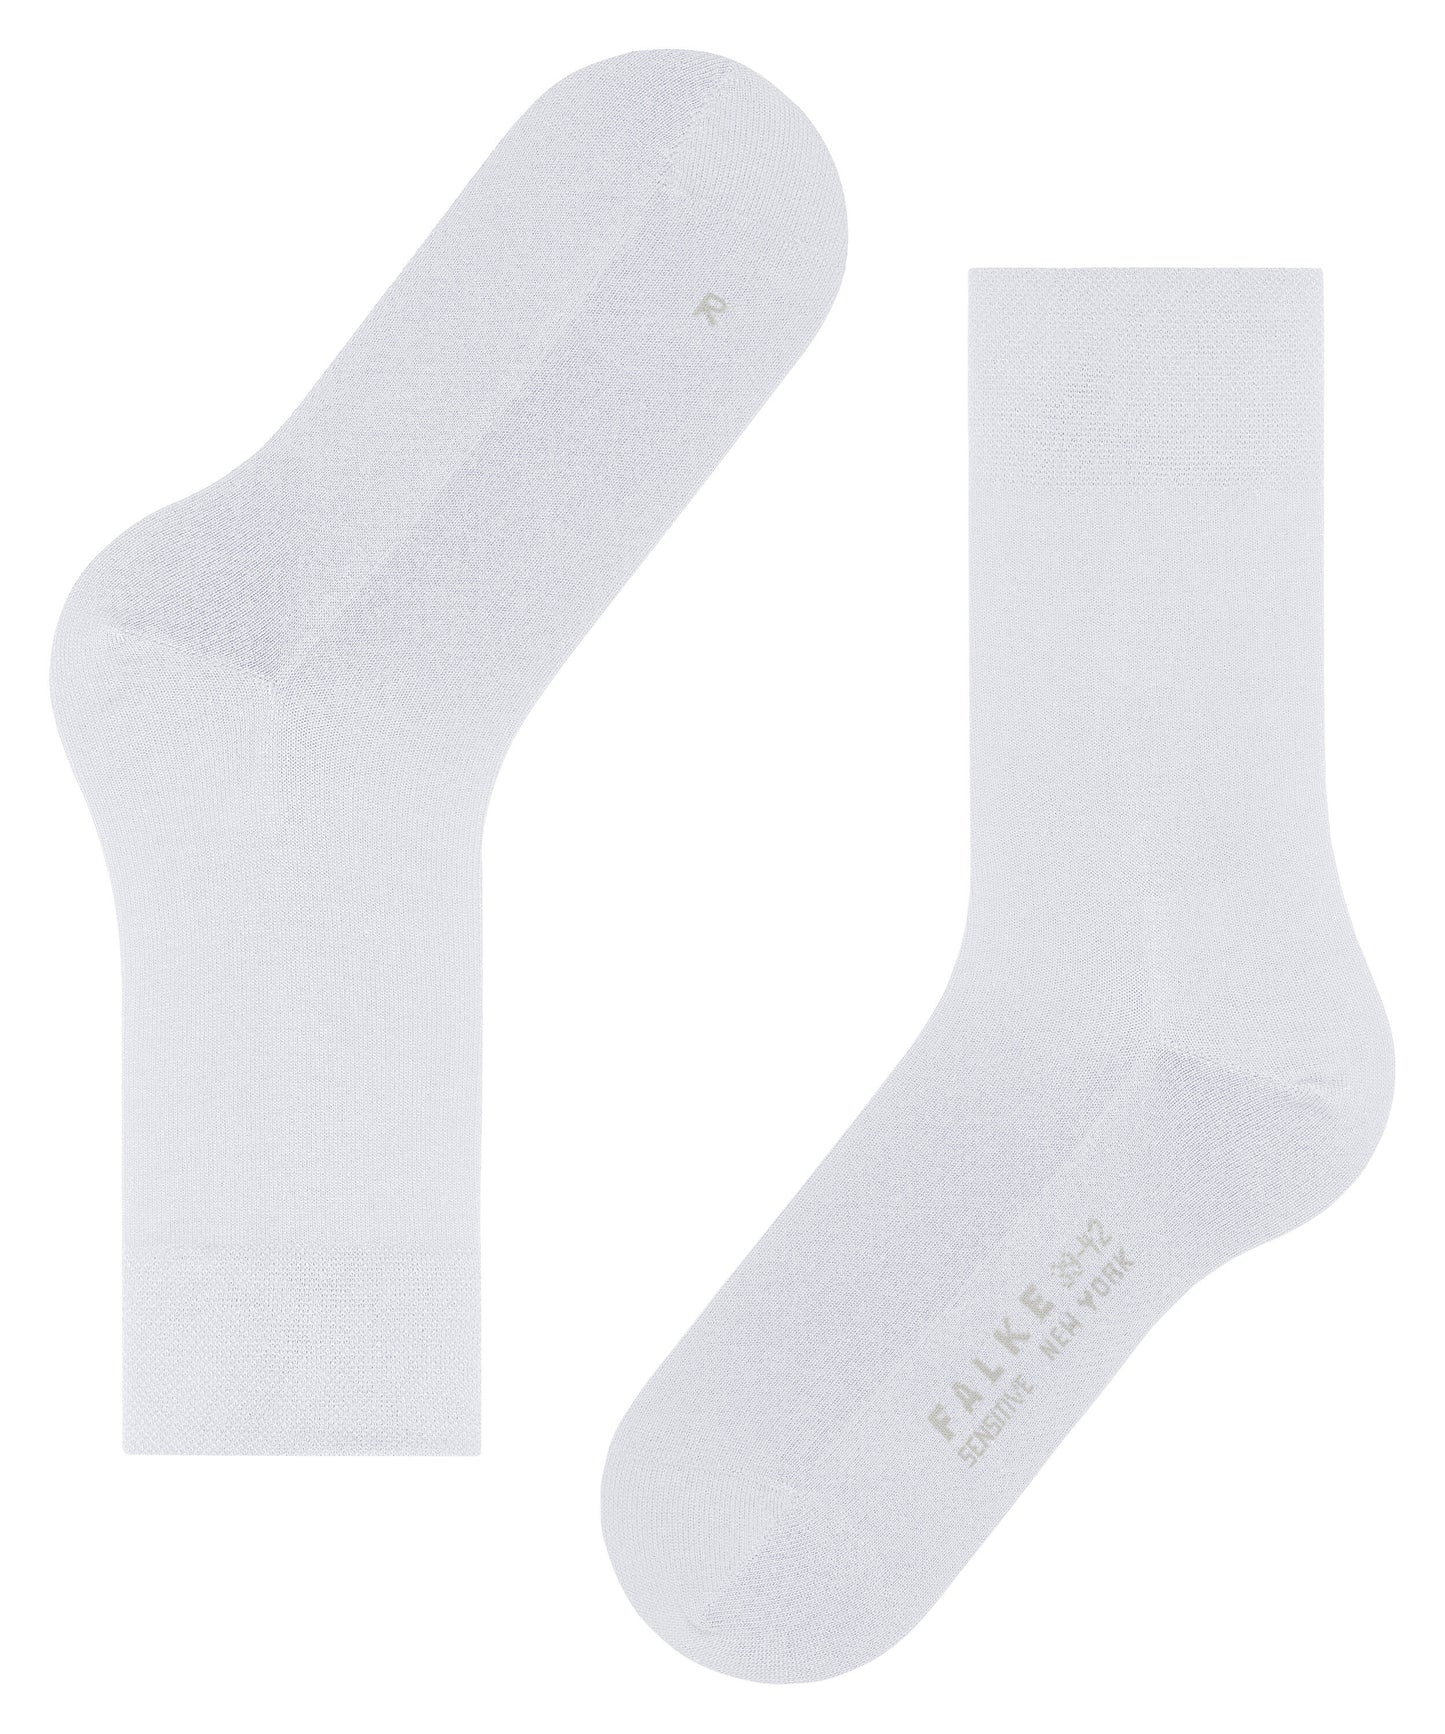 Socken New York (White)